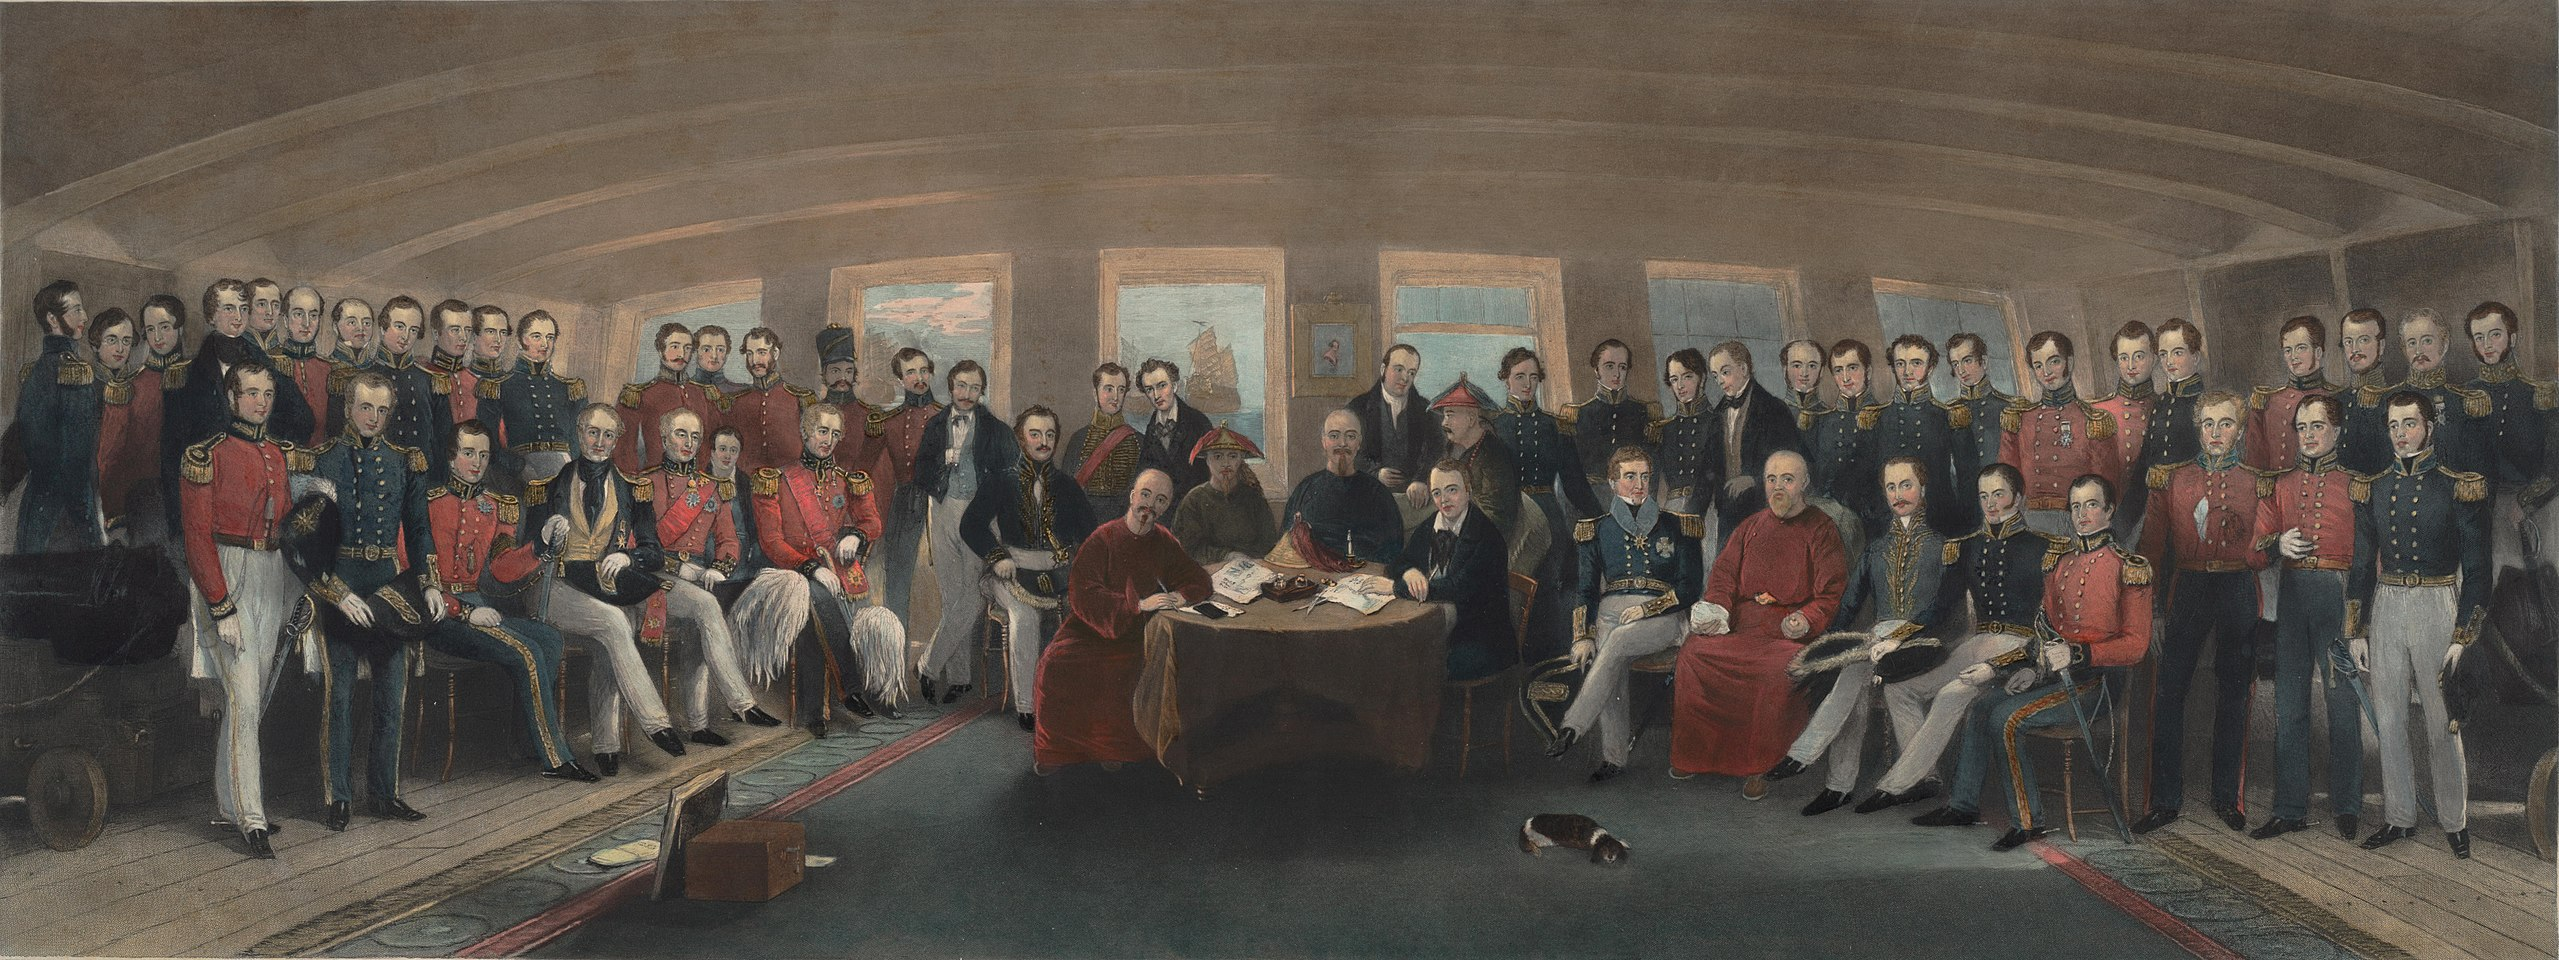 第一次鸦片战争后签订南京条约